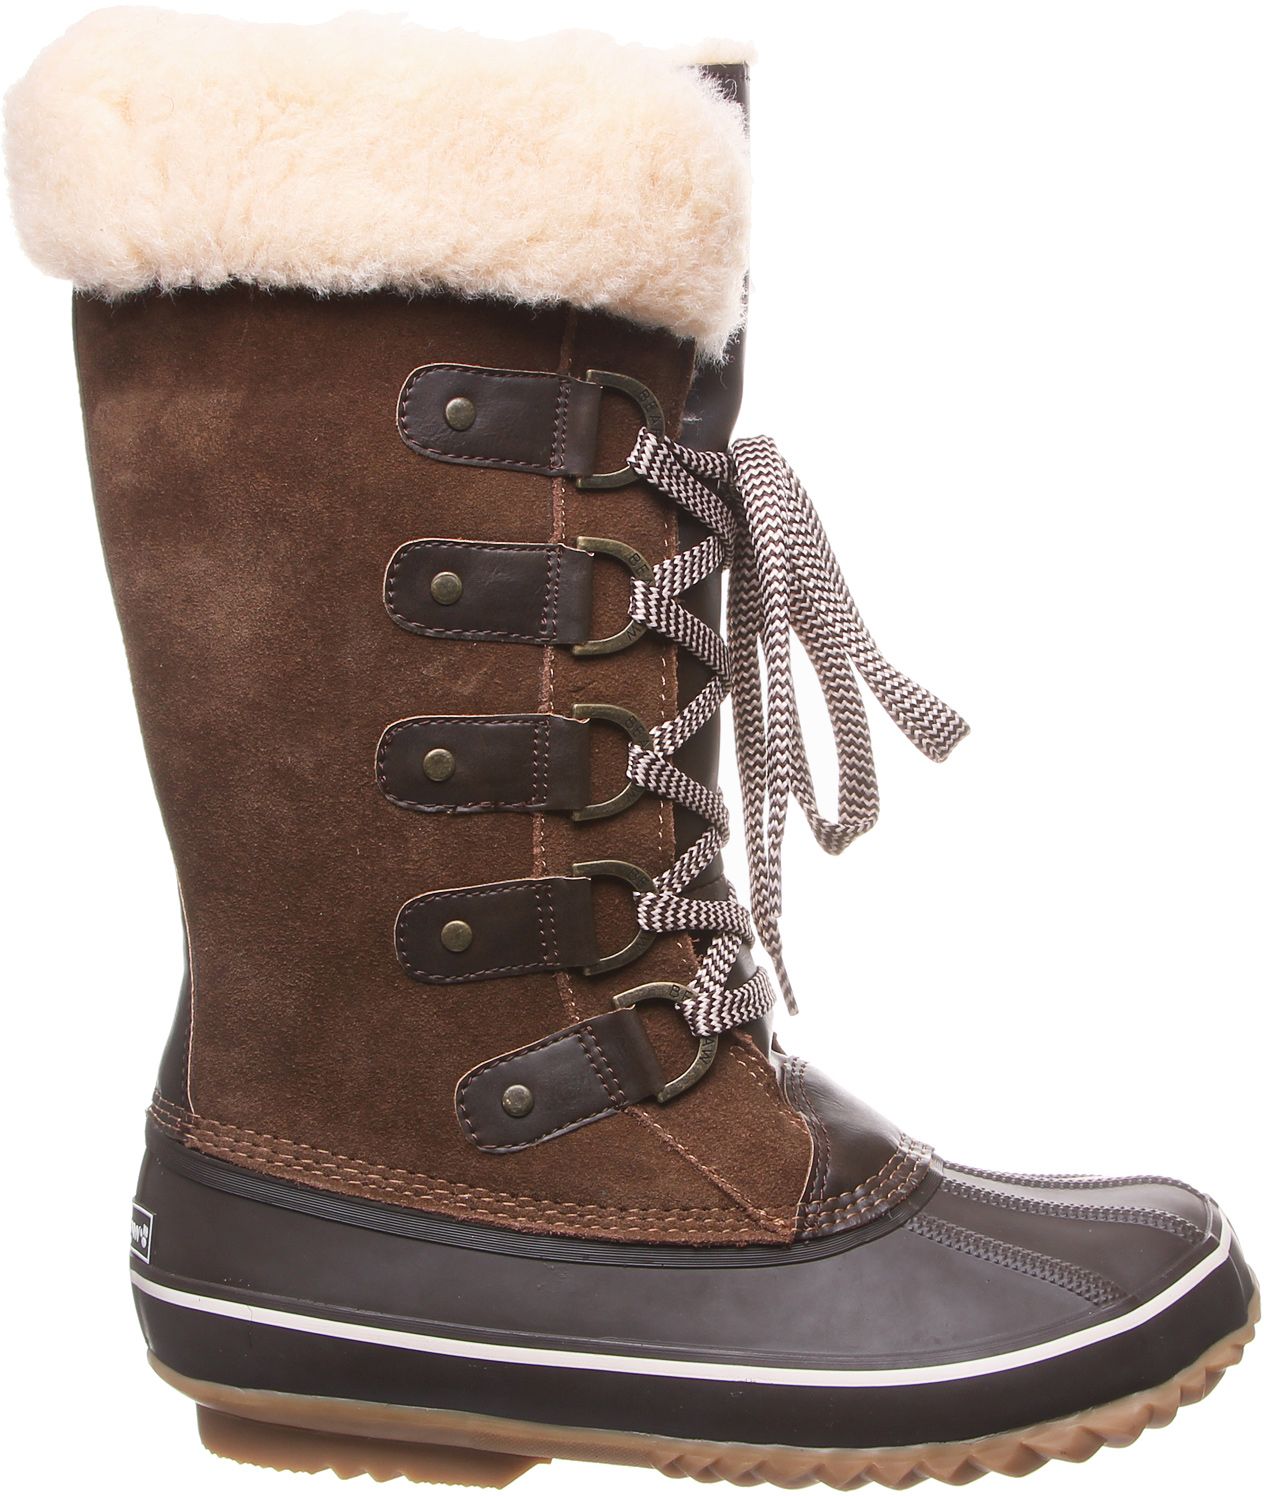 bearpaw waterproof winter boots